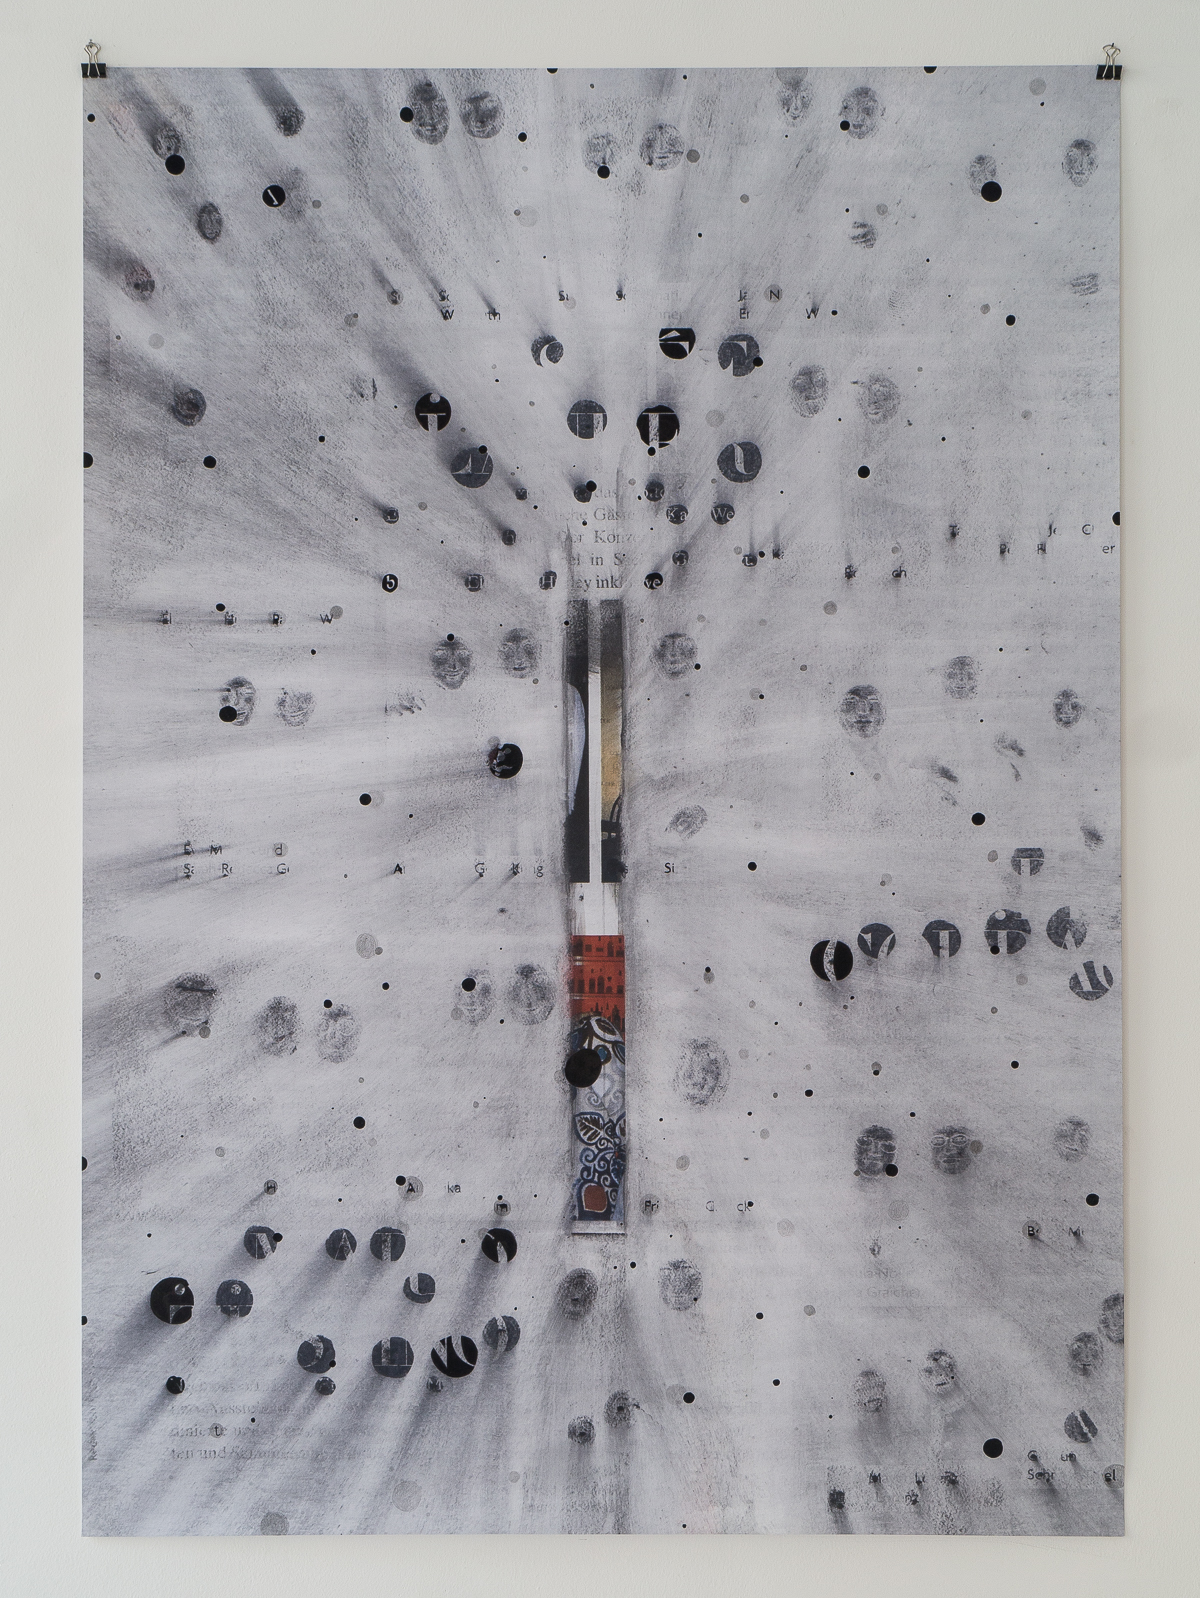 "The bang", 2017,  lavenderoil. pencil, feltpen on digitalprint, 84 x 118 cm